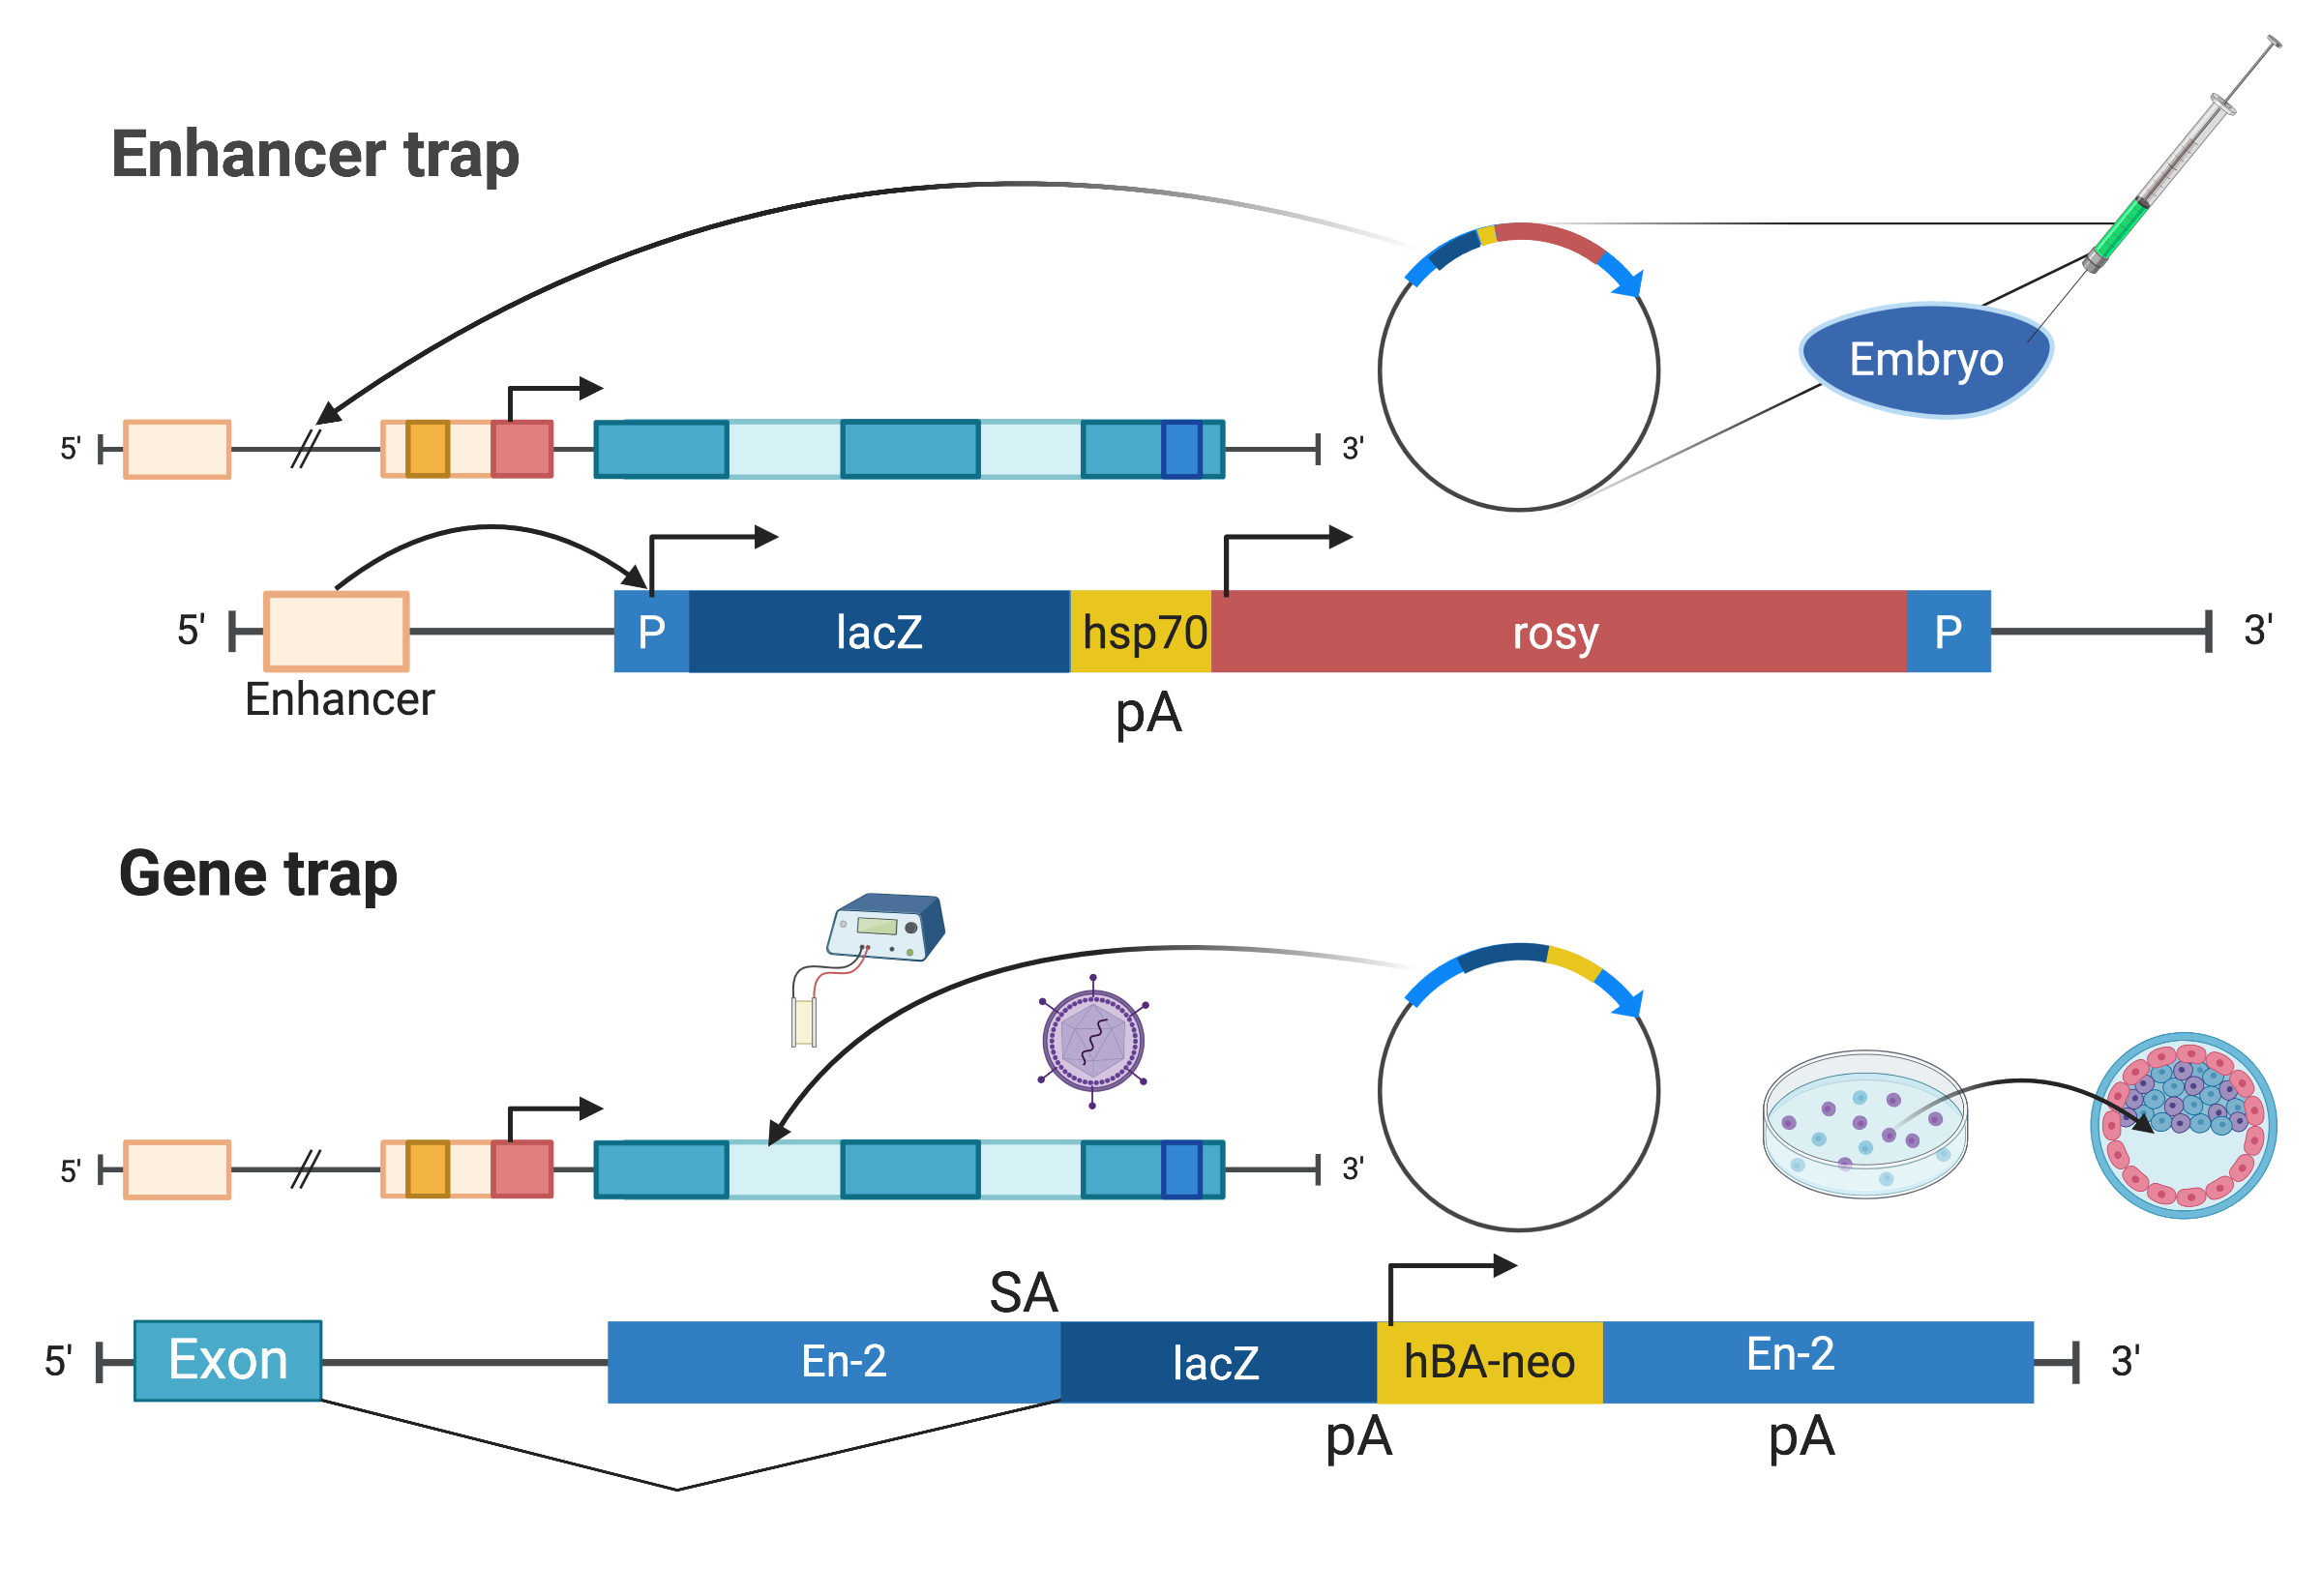 Illustrations of enhancer trap as described in (O’Kane and Gehring 1987) and gene trap as described in (Gossler et al. 1989) (Created with BioRender.com).